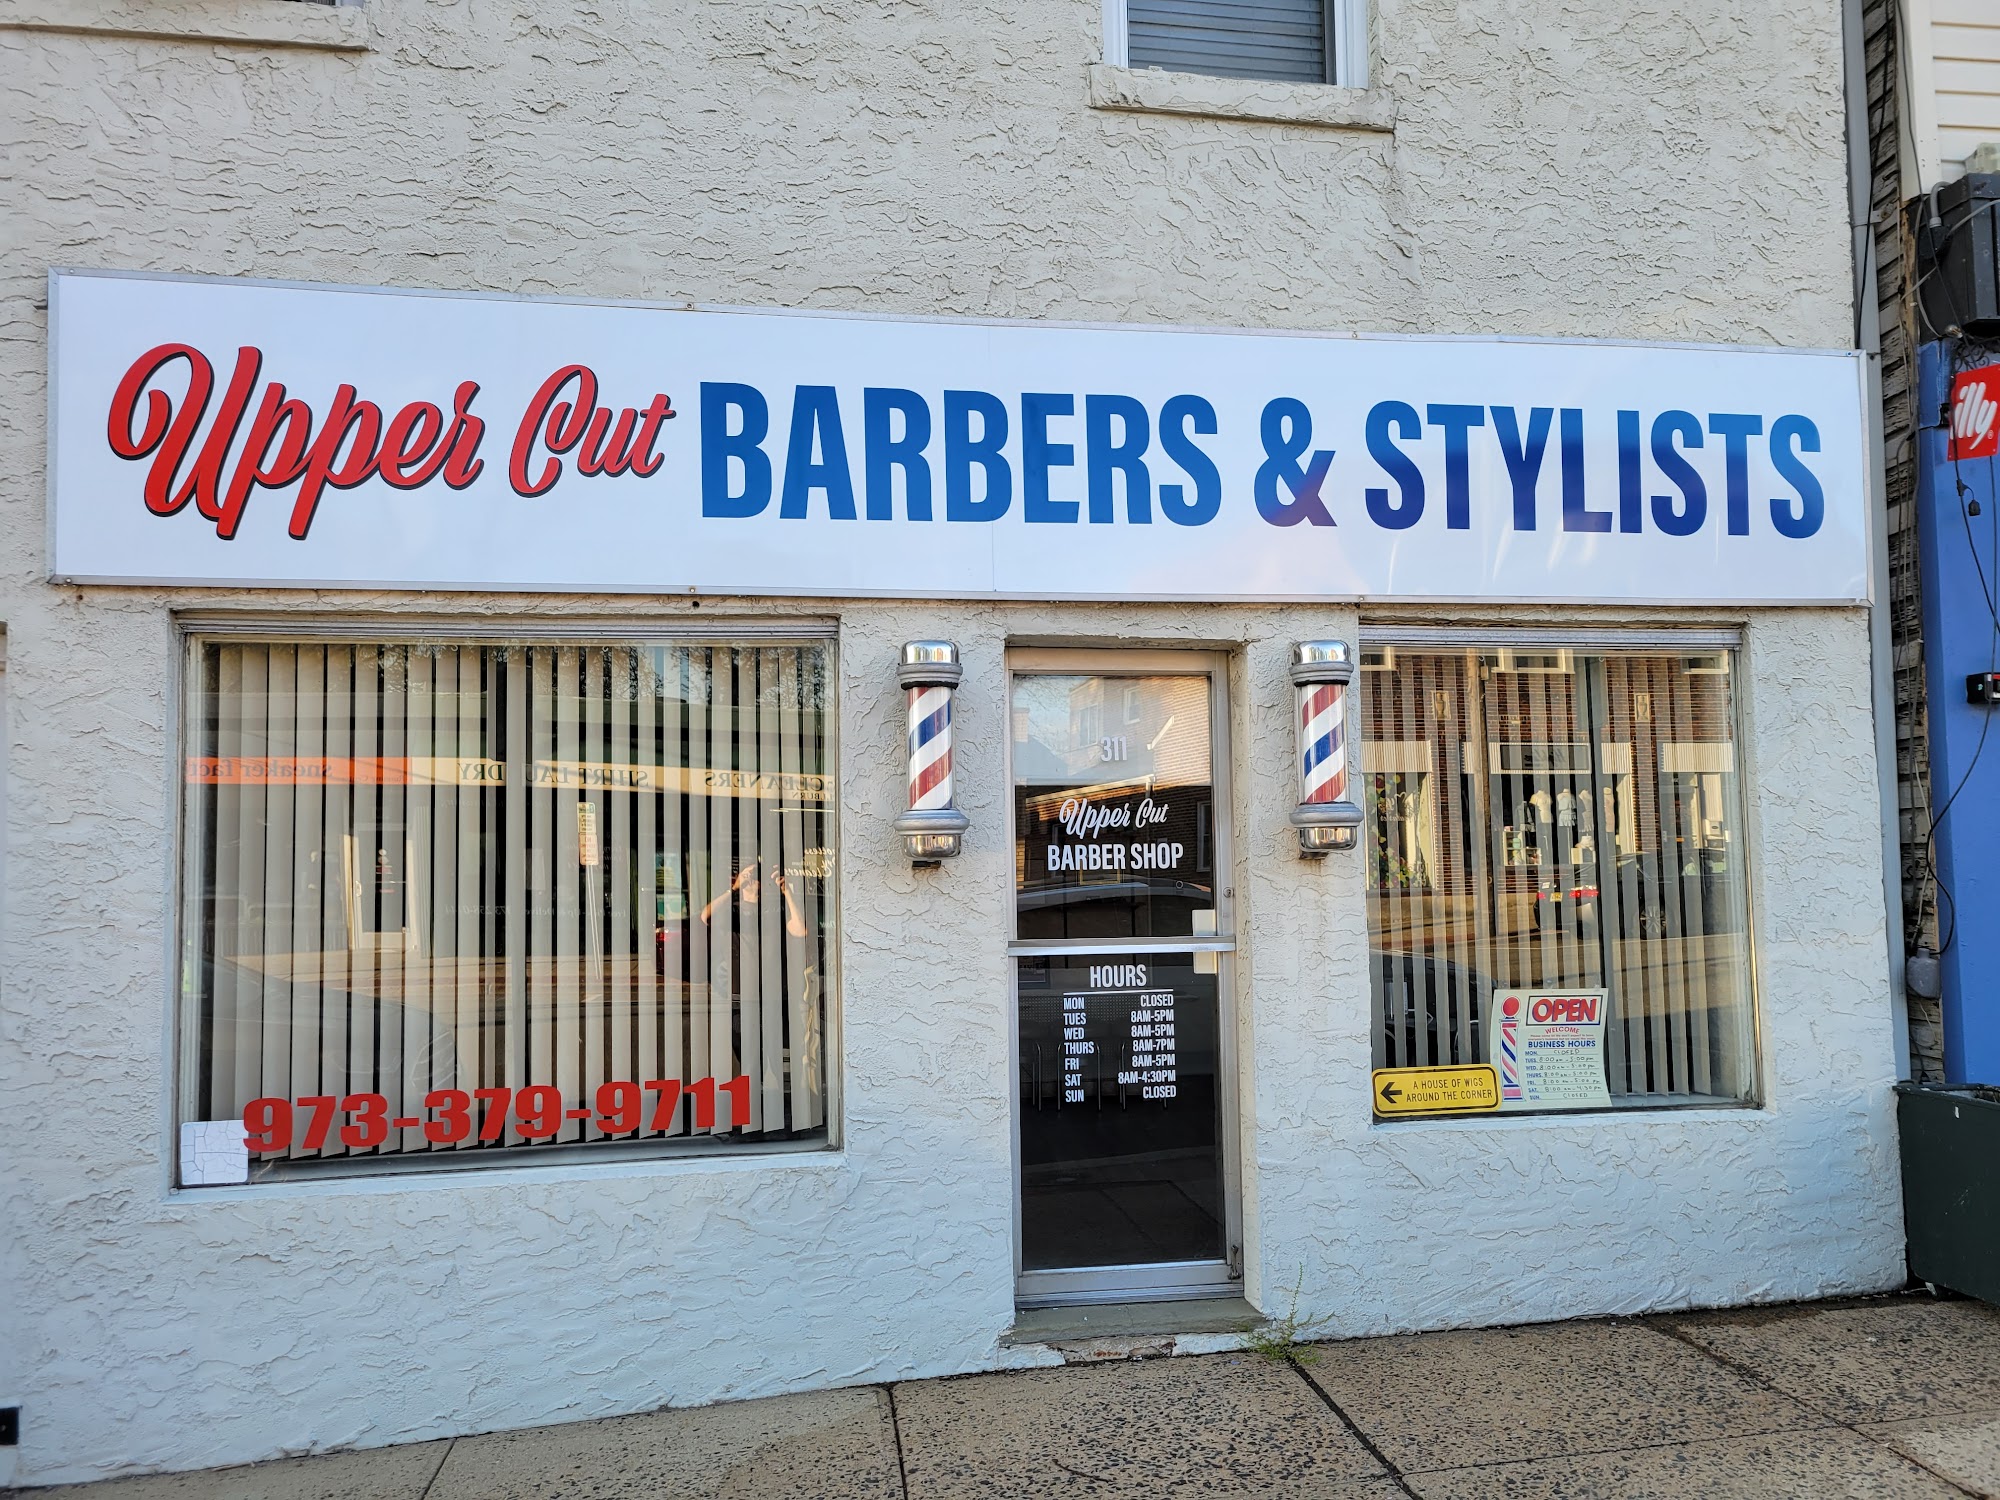 Upper Cut Barbers & Stylists